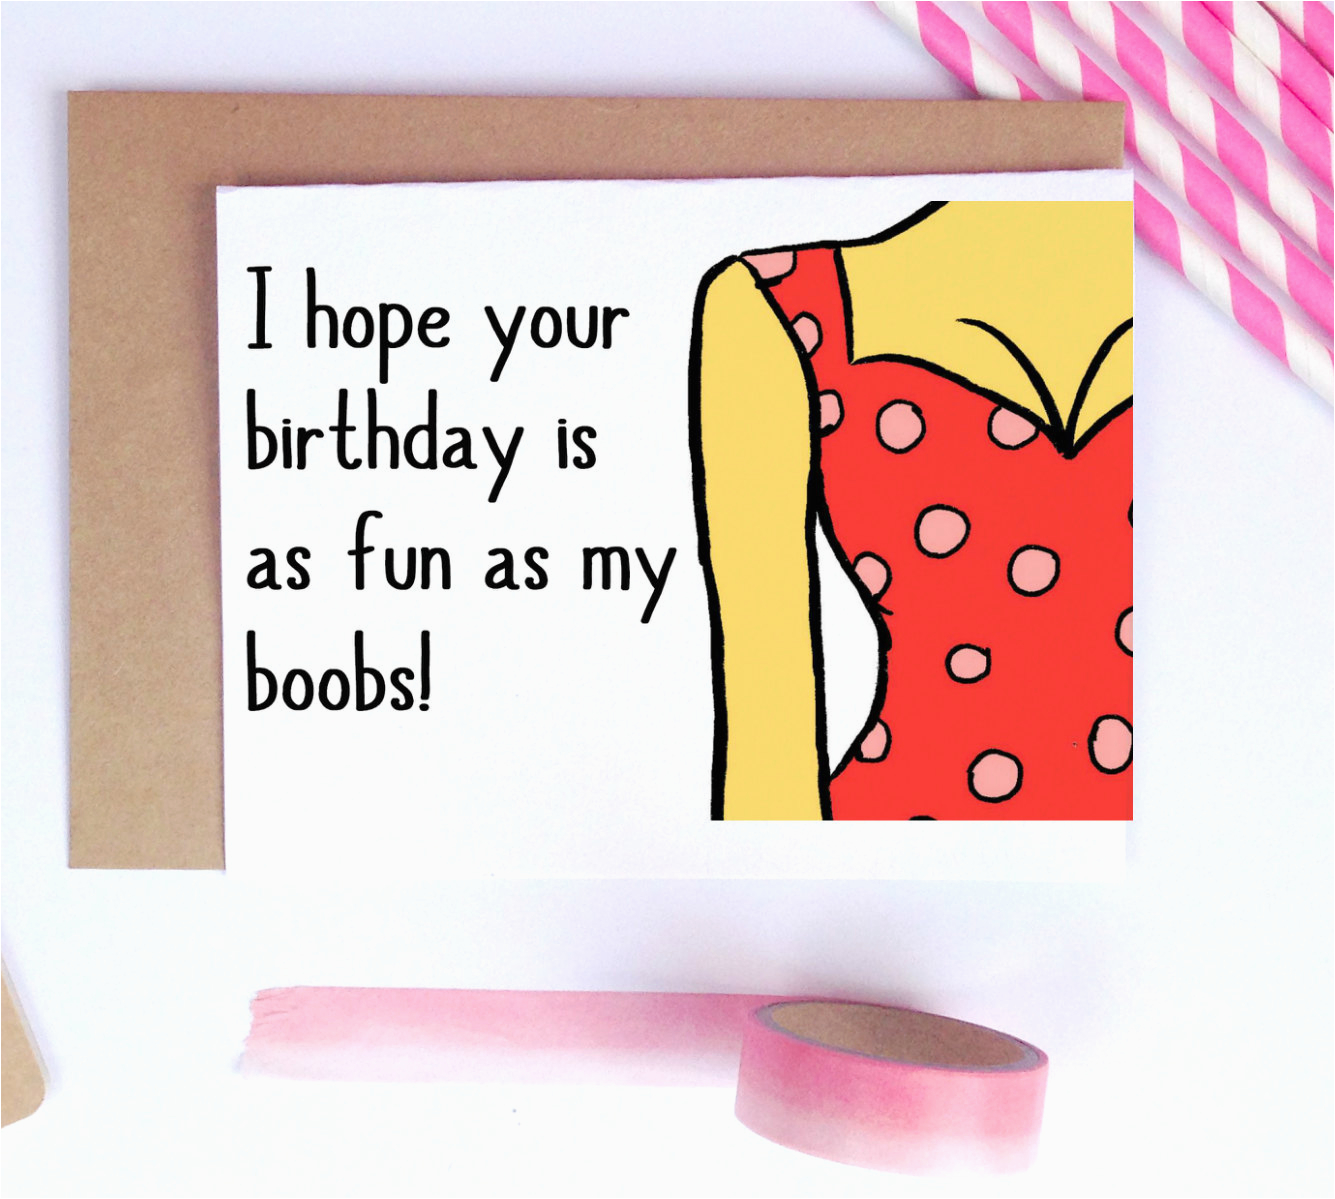 Raunchy Birthday Cards Dirty Birthday Cards Card Design Ideas Birthdaybuzz